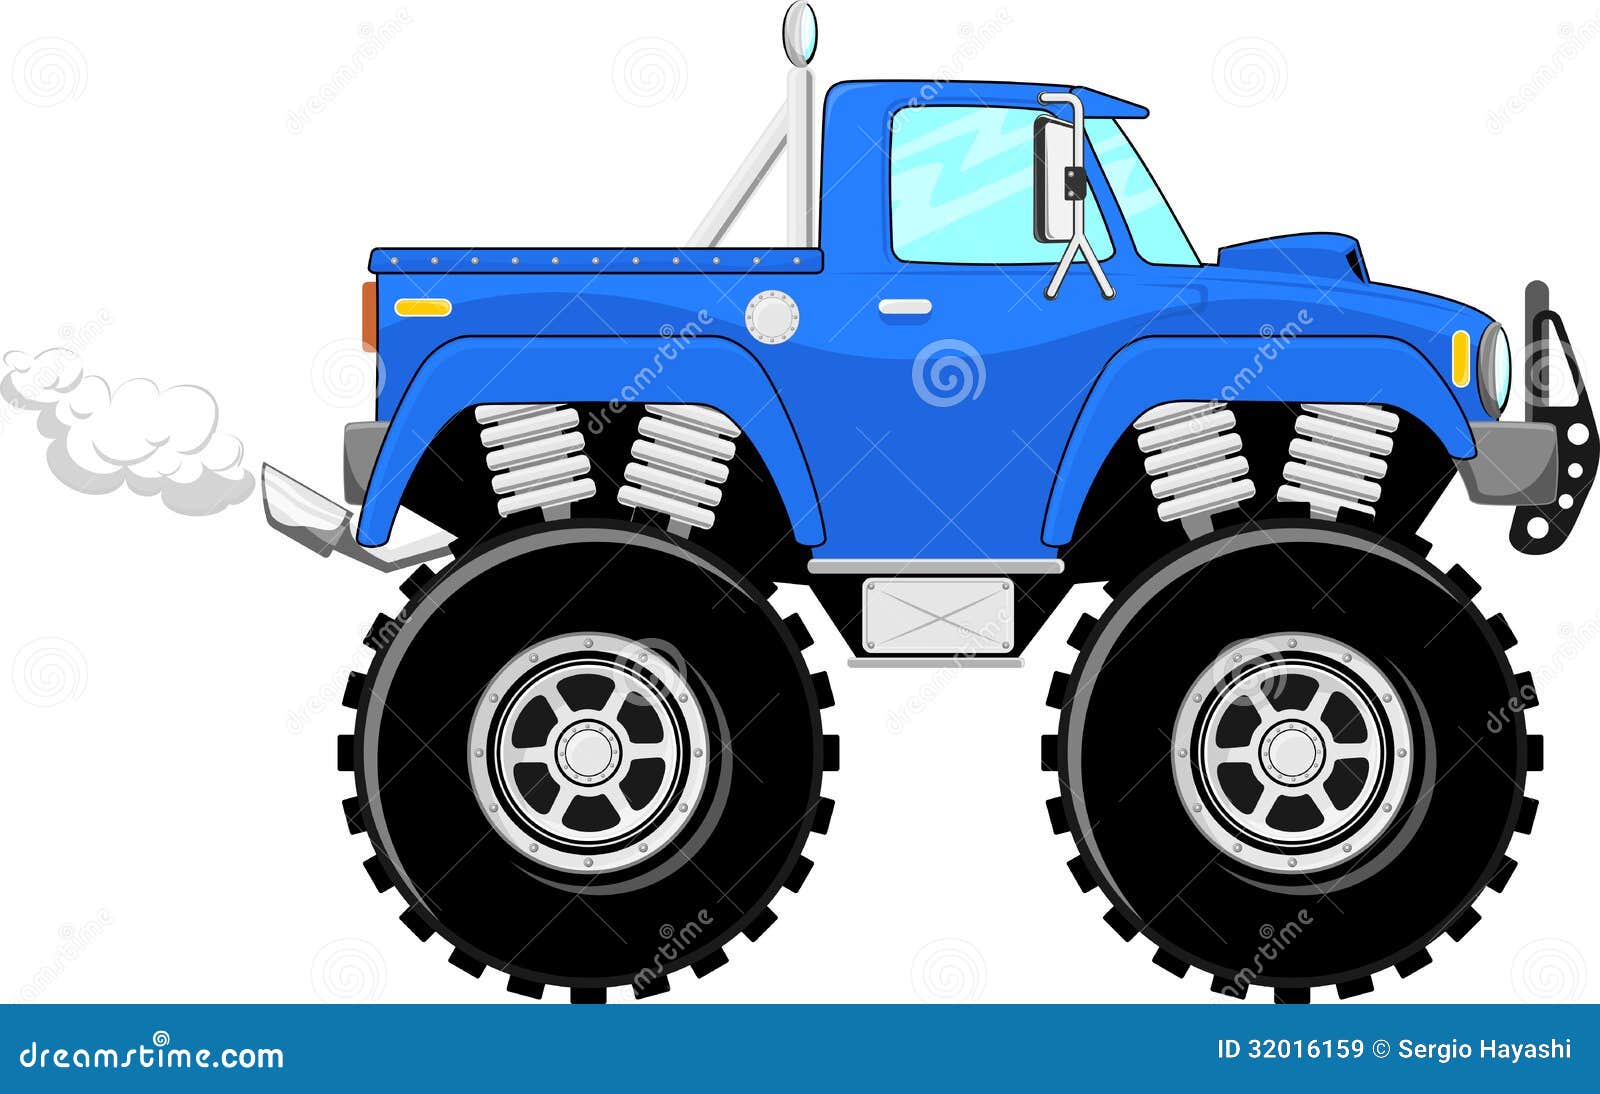 Cartoon Monster Truck  Monster trucks, Lifted trucks, Monster truck art